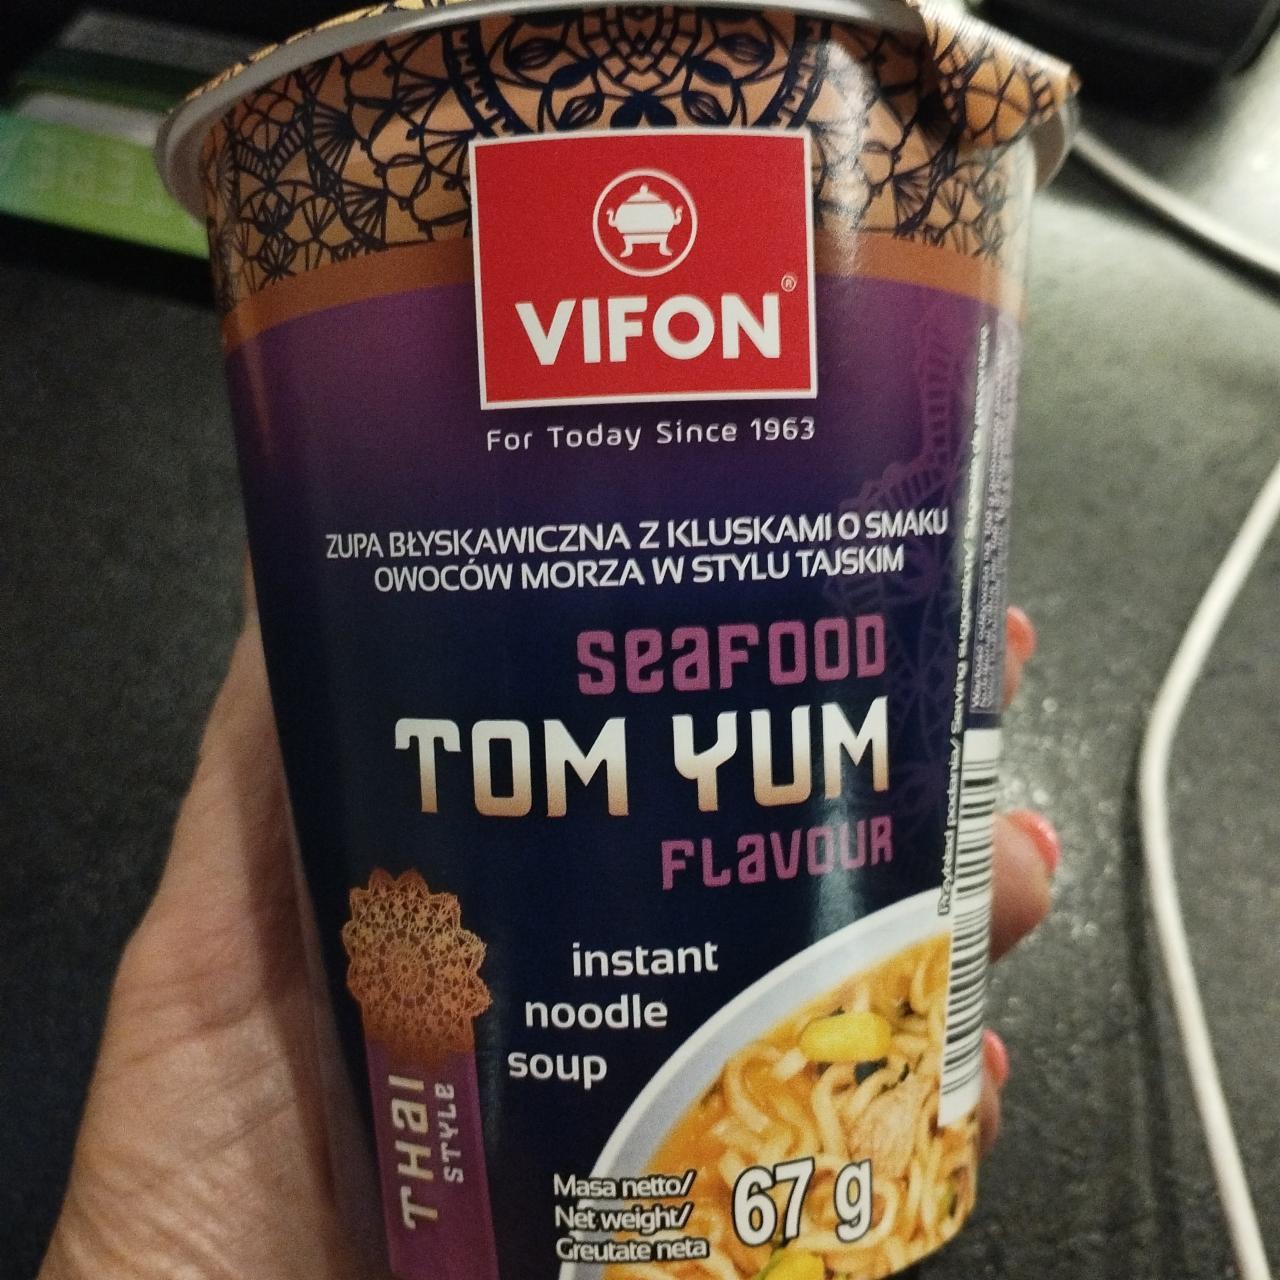 Zdjęcia - Vifon Tom Yum Zupa z kluskami o smaku owoców morza w stylu tajskim 67 g